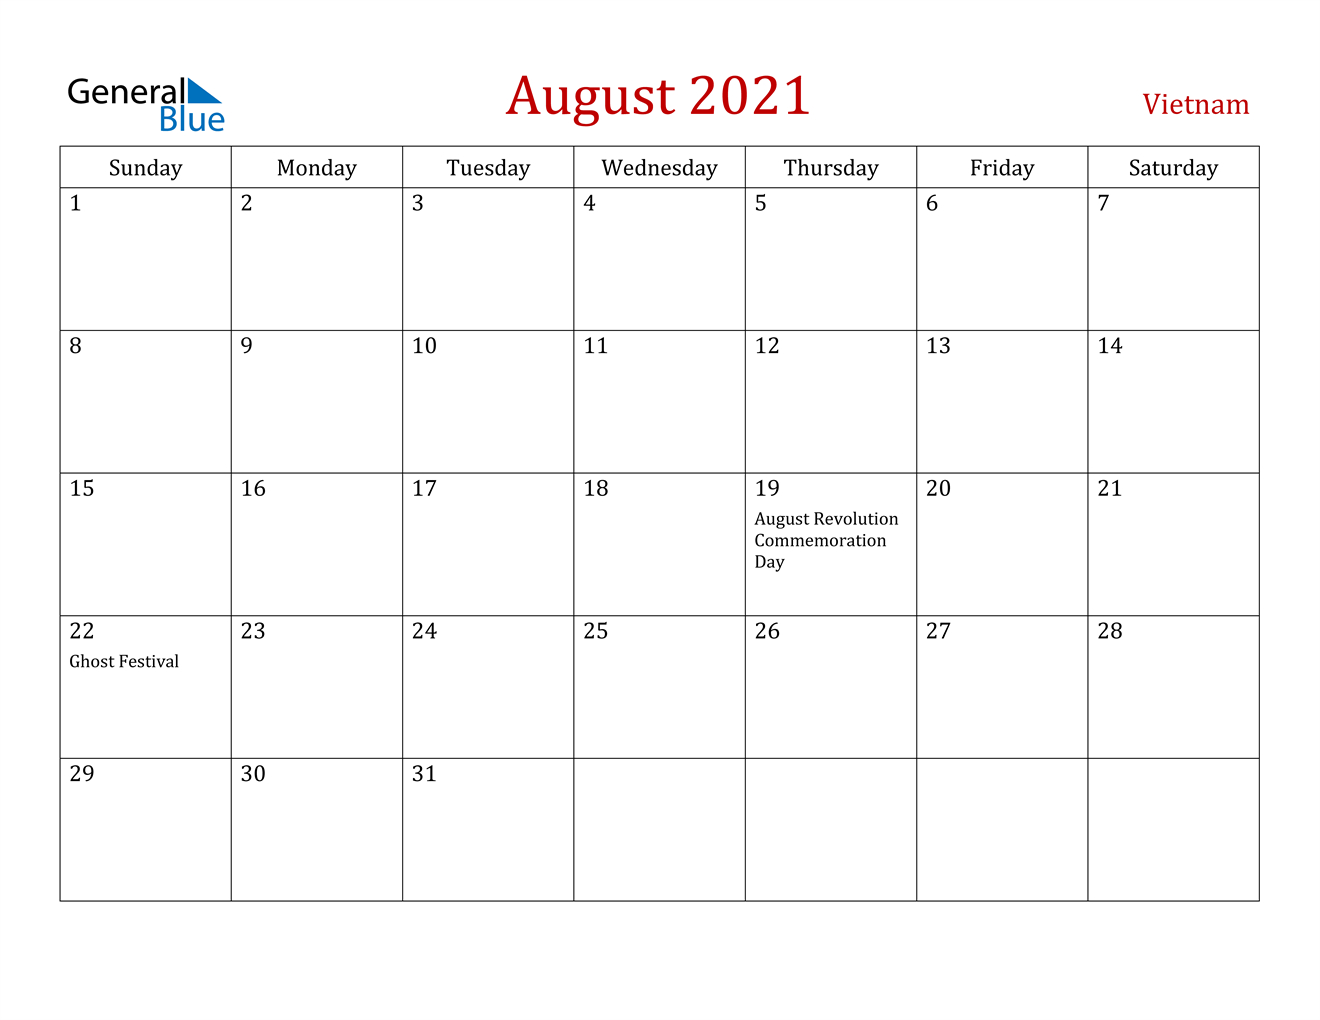 August 2021 Calendar - Vietnam